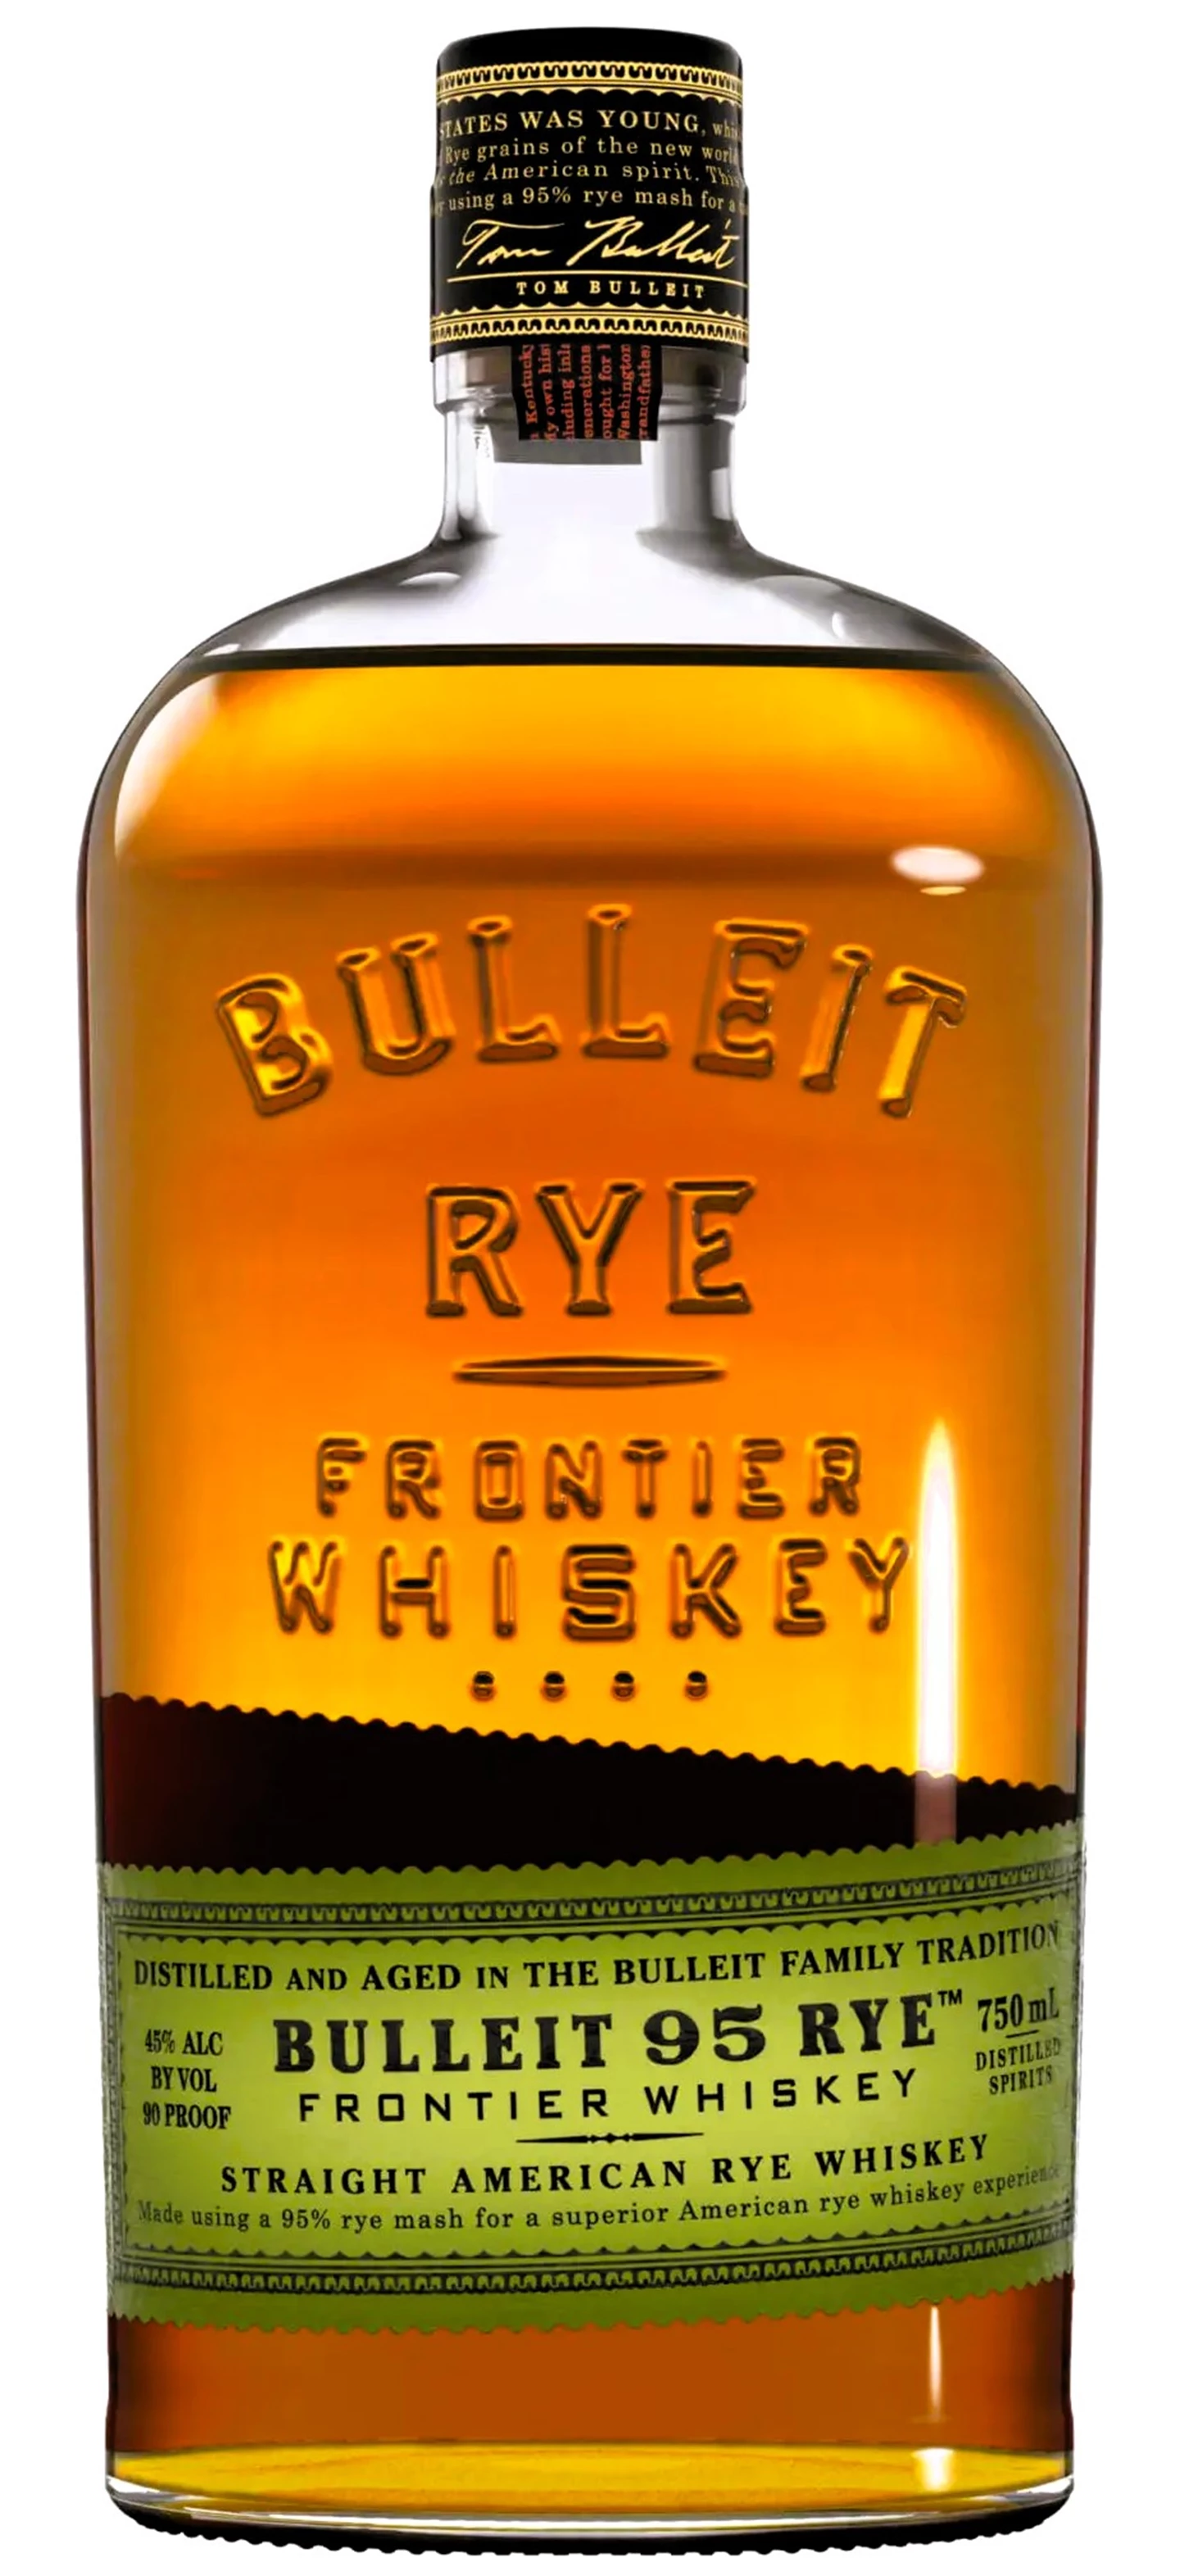 Bulleit Kentucky Straight Rye Whisky